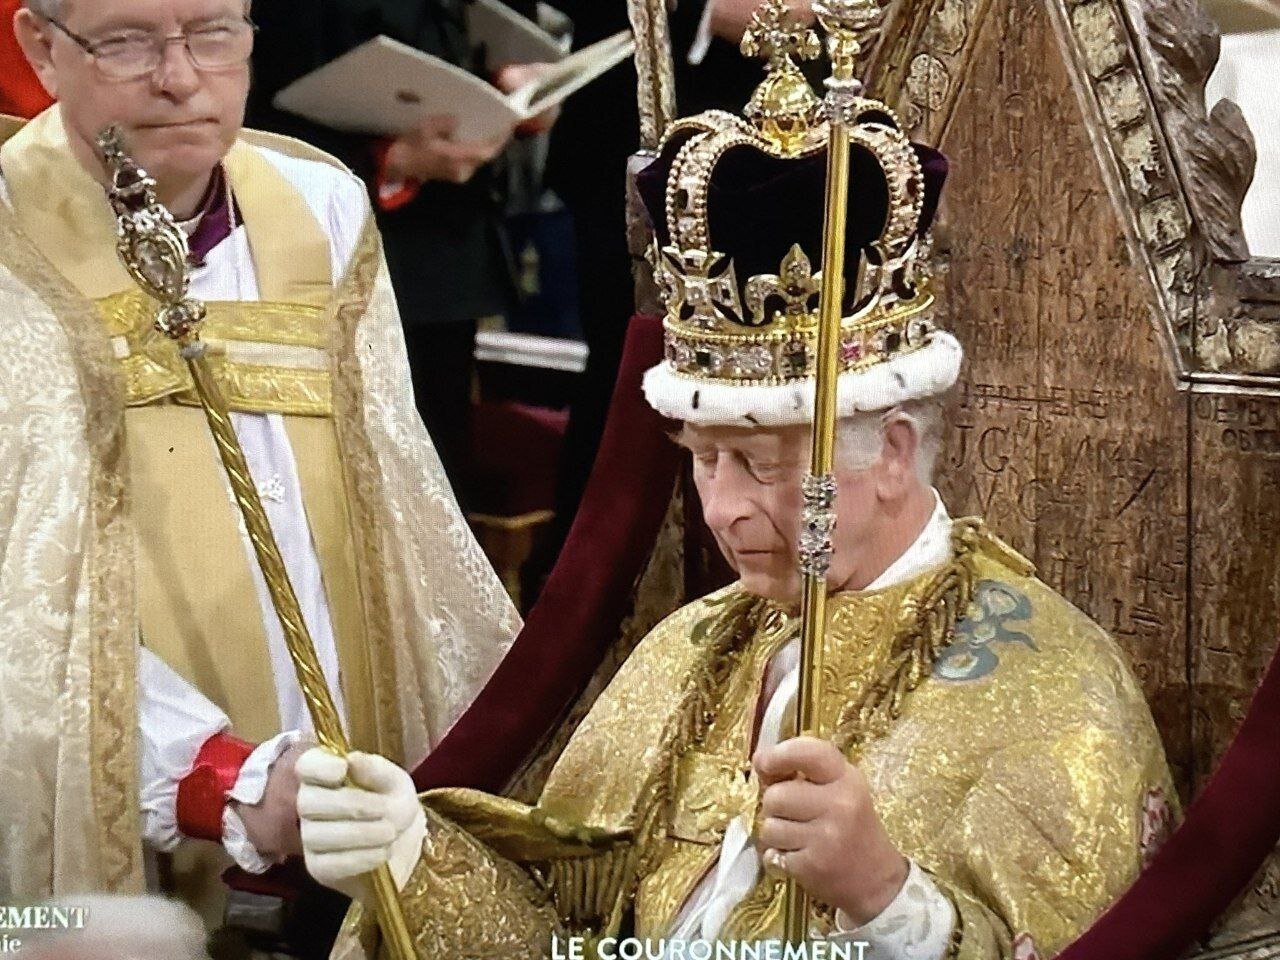 فیلم تاجگذاری چارلز سوم پادشاه بریتانیا